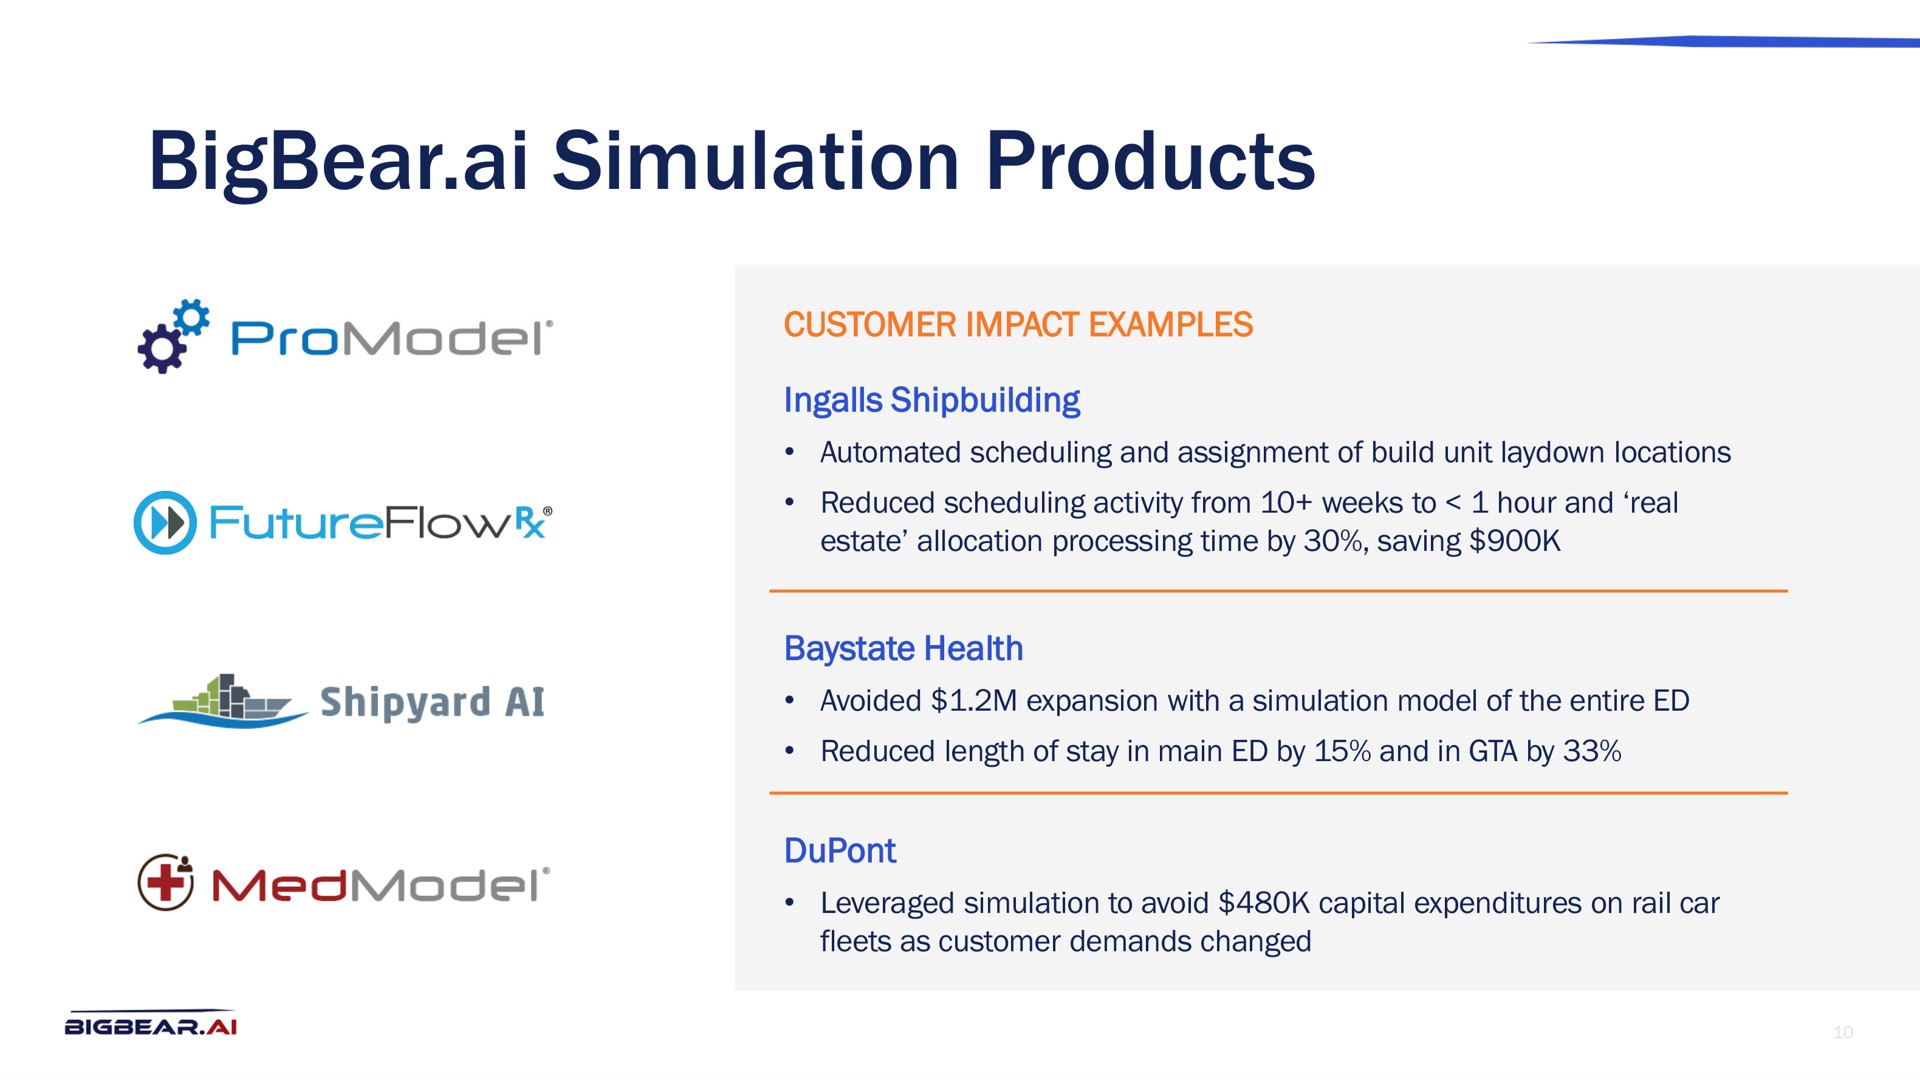 simulation products | Bigbear AI